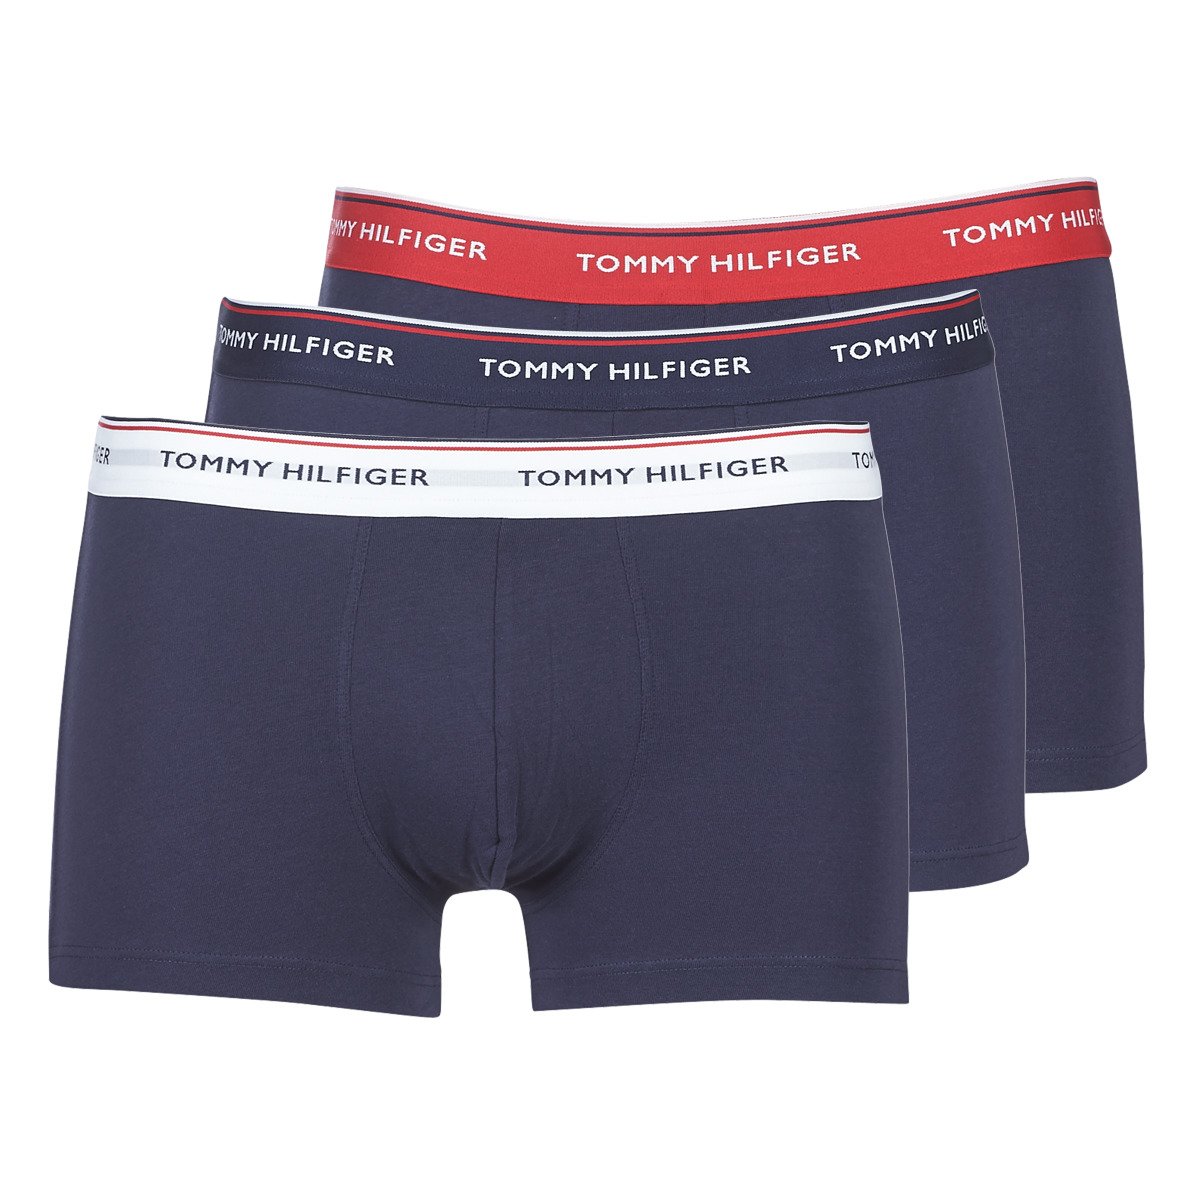 tommy hilfiger children's underwear